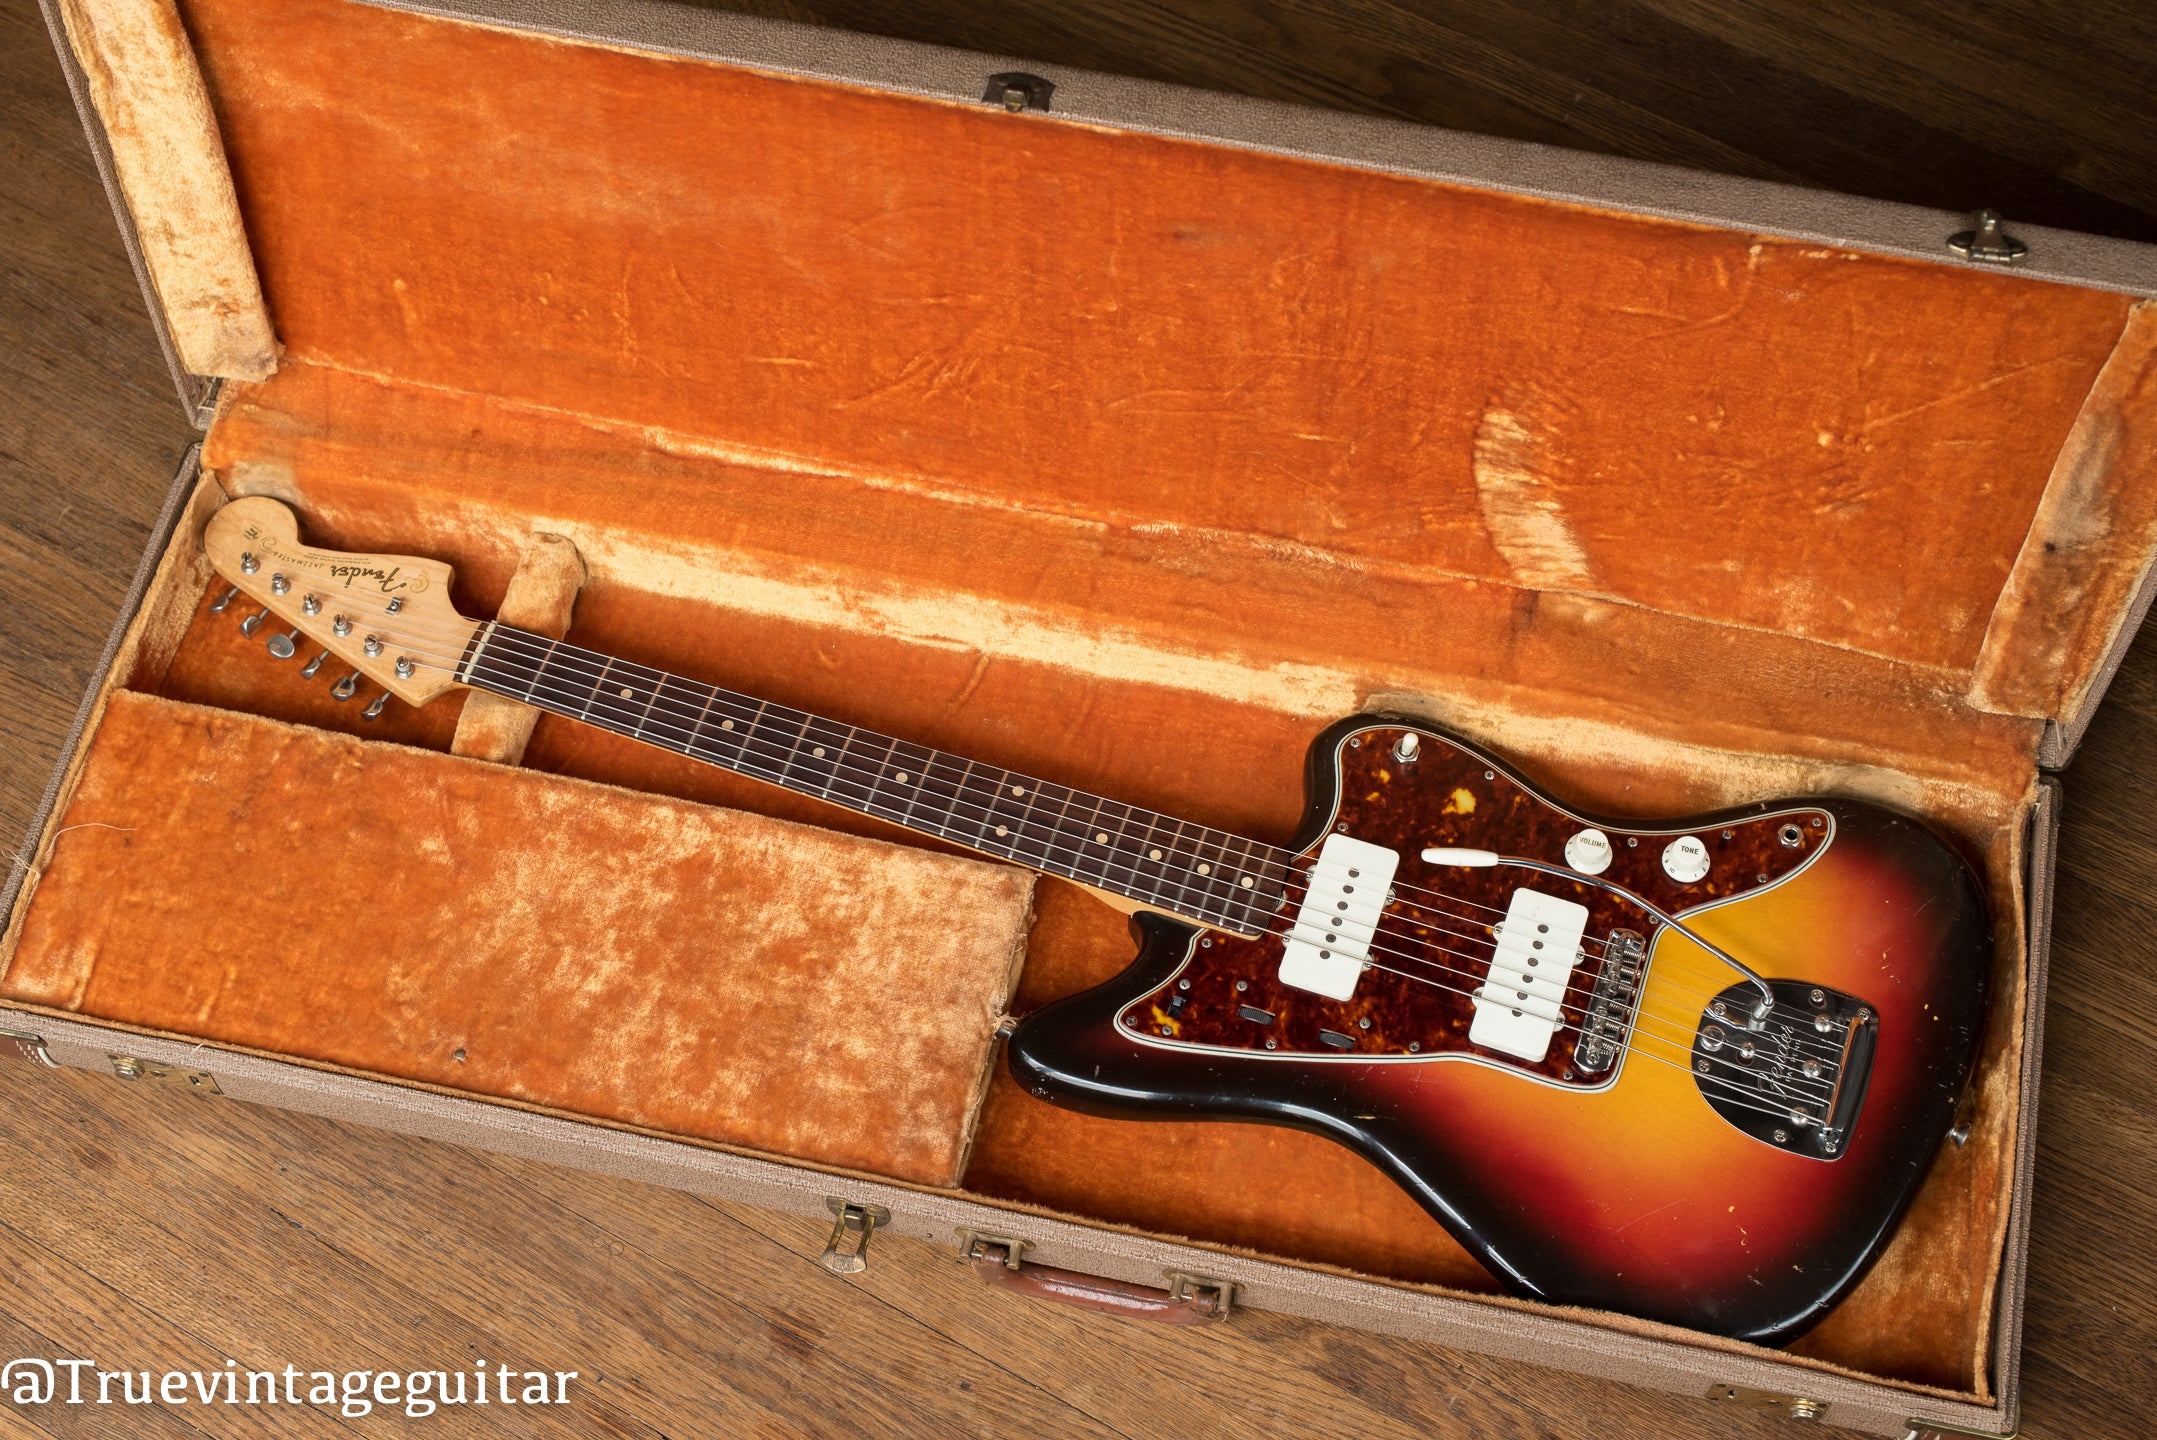 Vintage 1961 Fender Jazzmaster electric guitar in original case